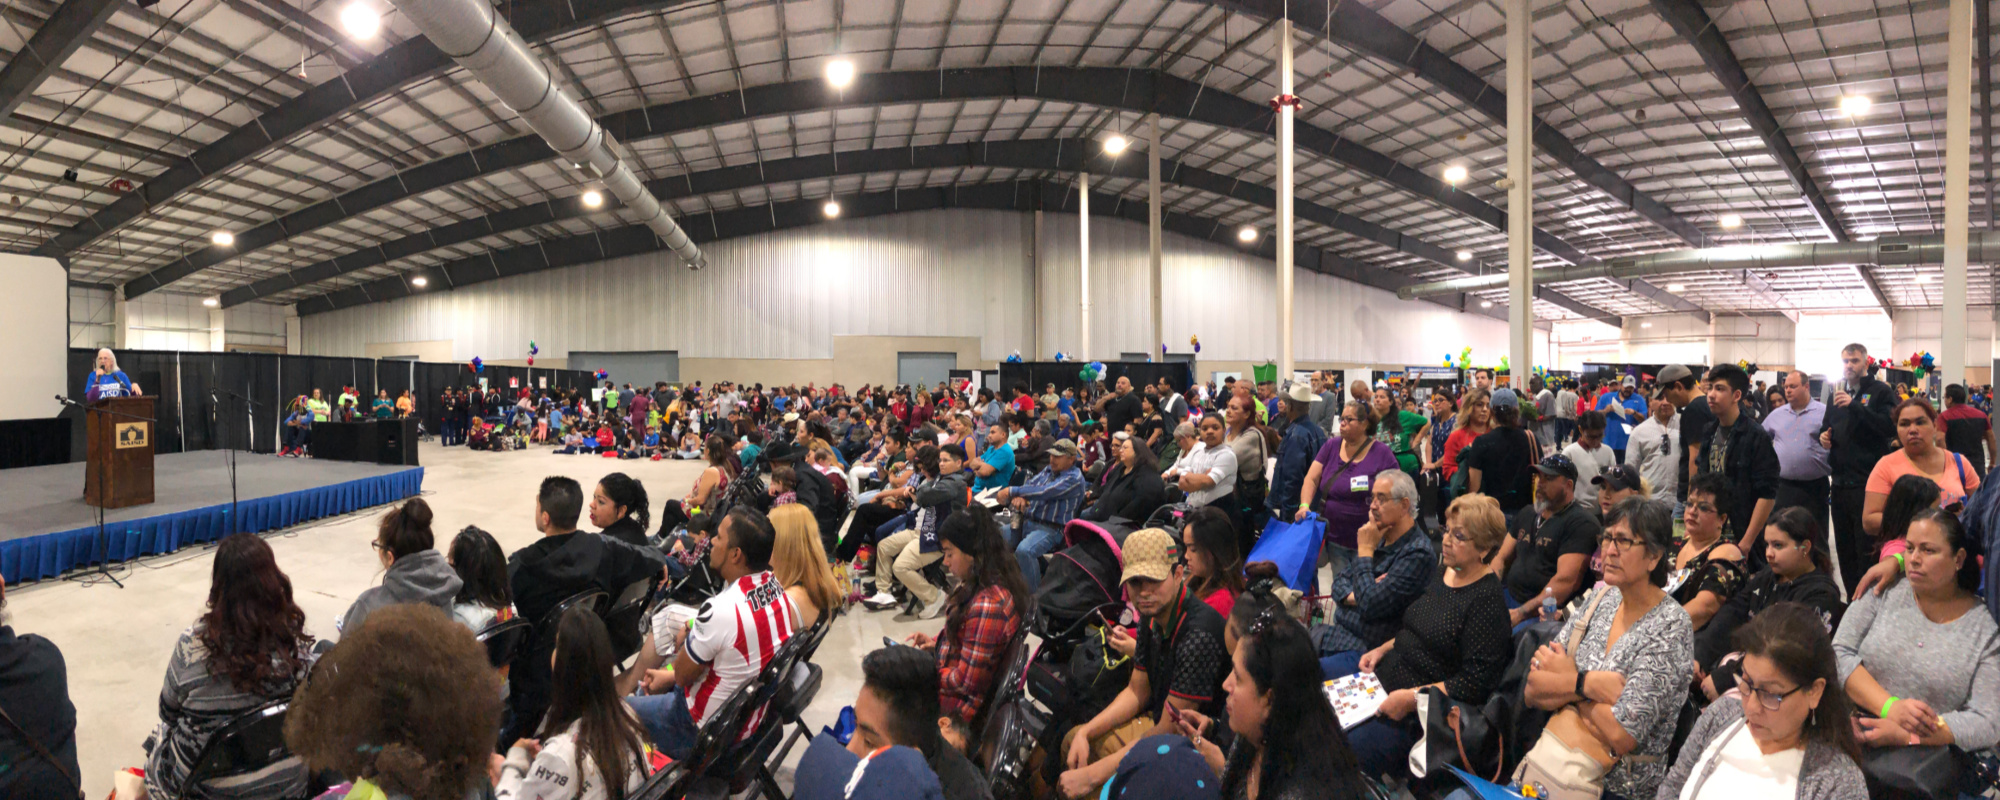 Panorama of the crowd at Experience SAISD | San Antonio Charter Moms